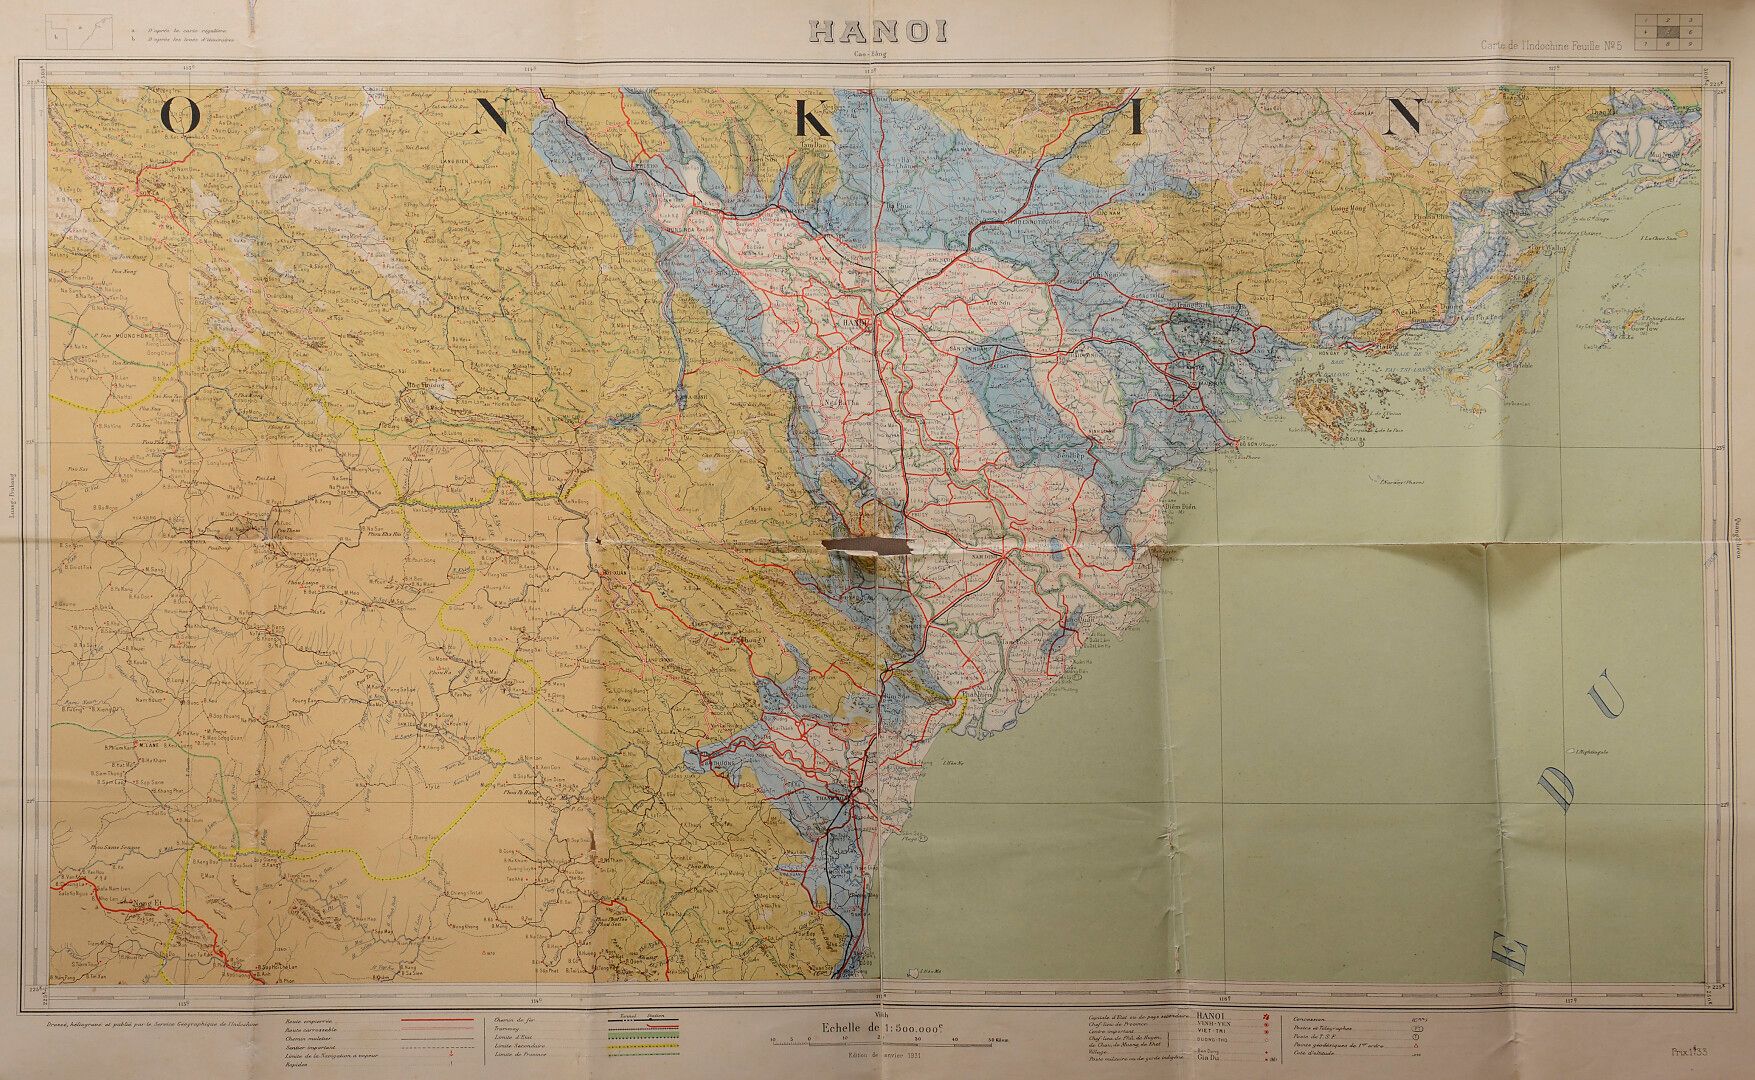 Null 
印度支那地图，N5页。河内-高平。

由印度支那地理局绘制，凹版印刷。

尺寸：100x64厘米。使用状况，有折痕和破损。